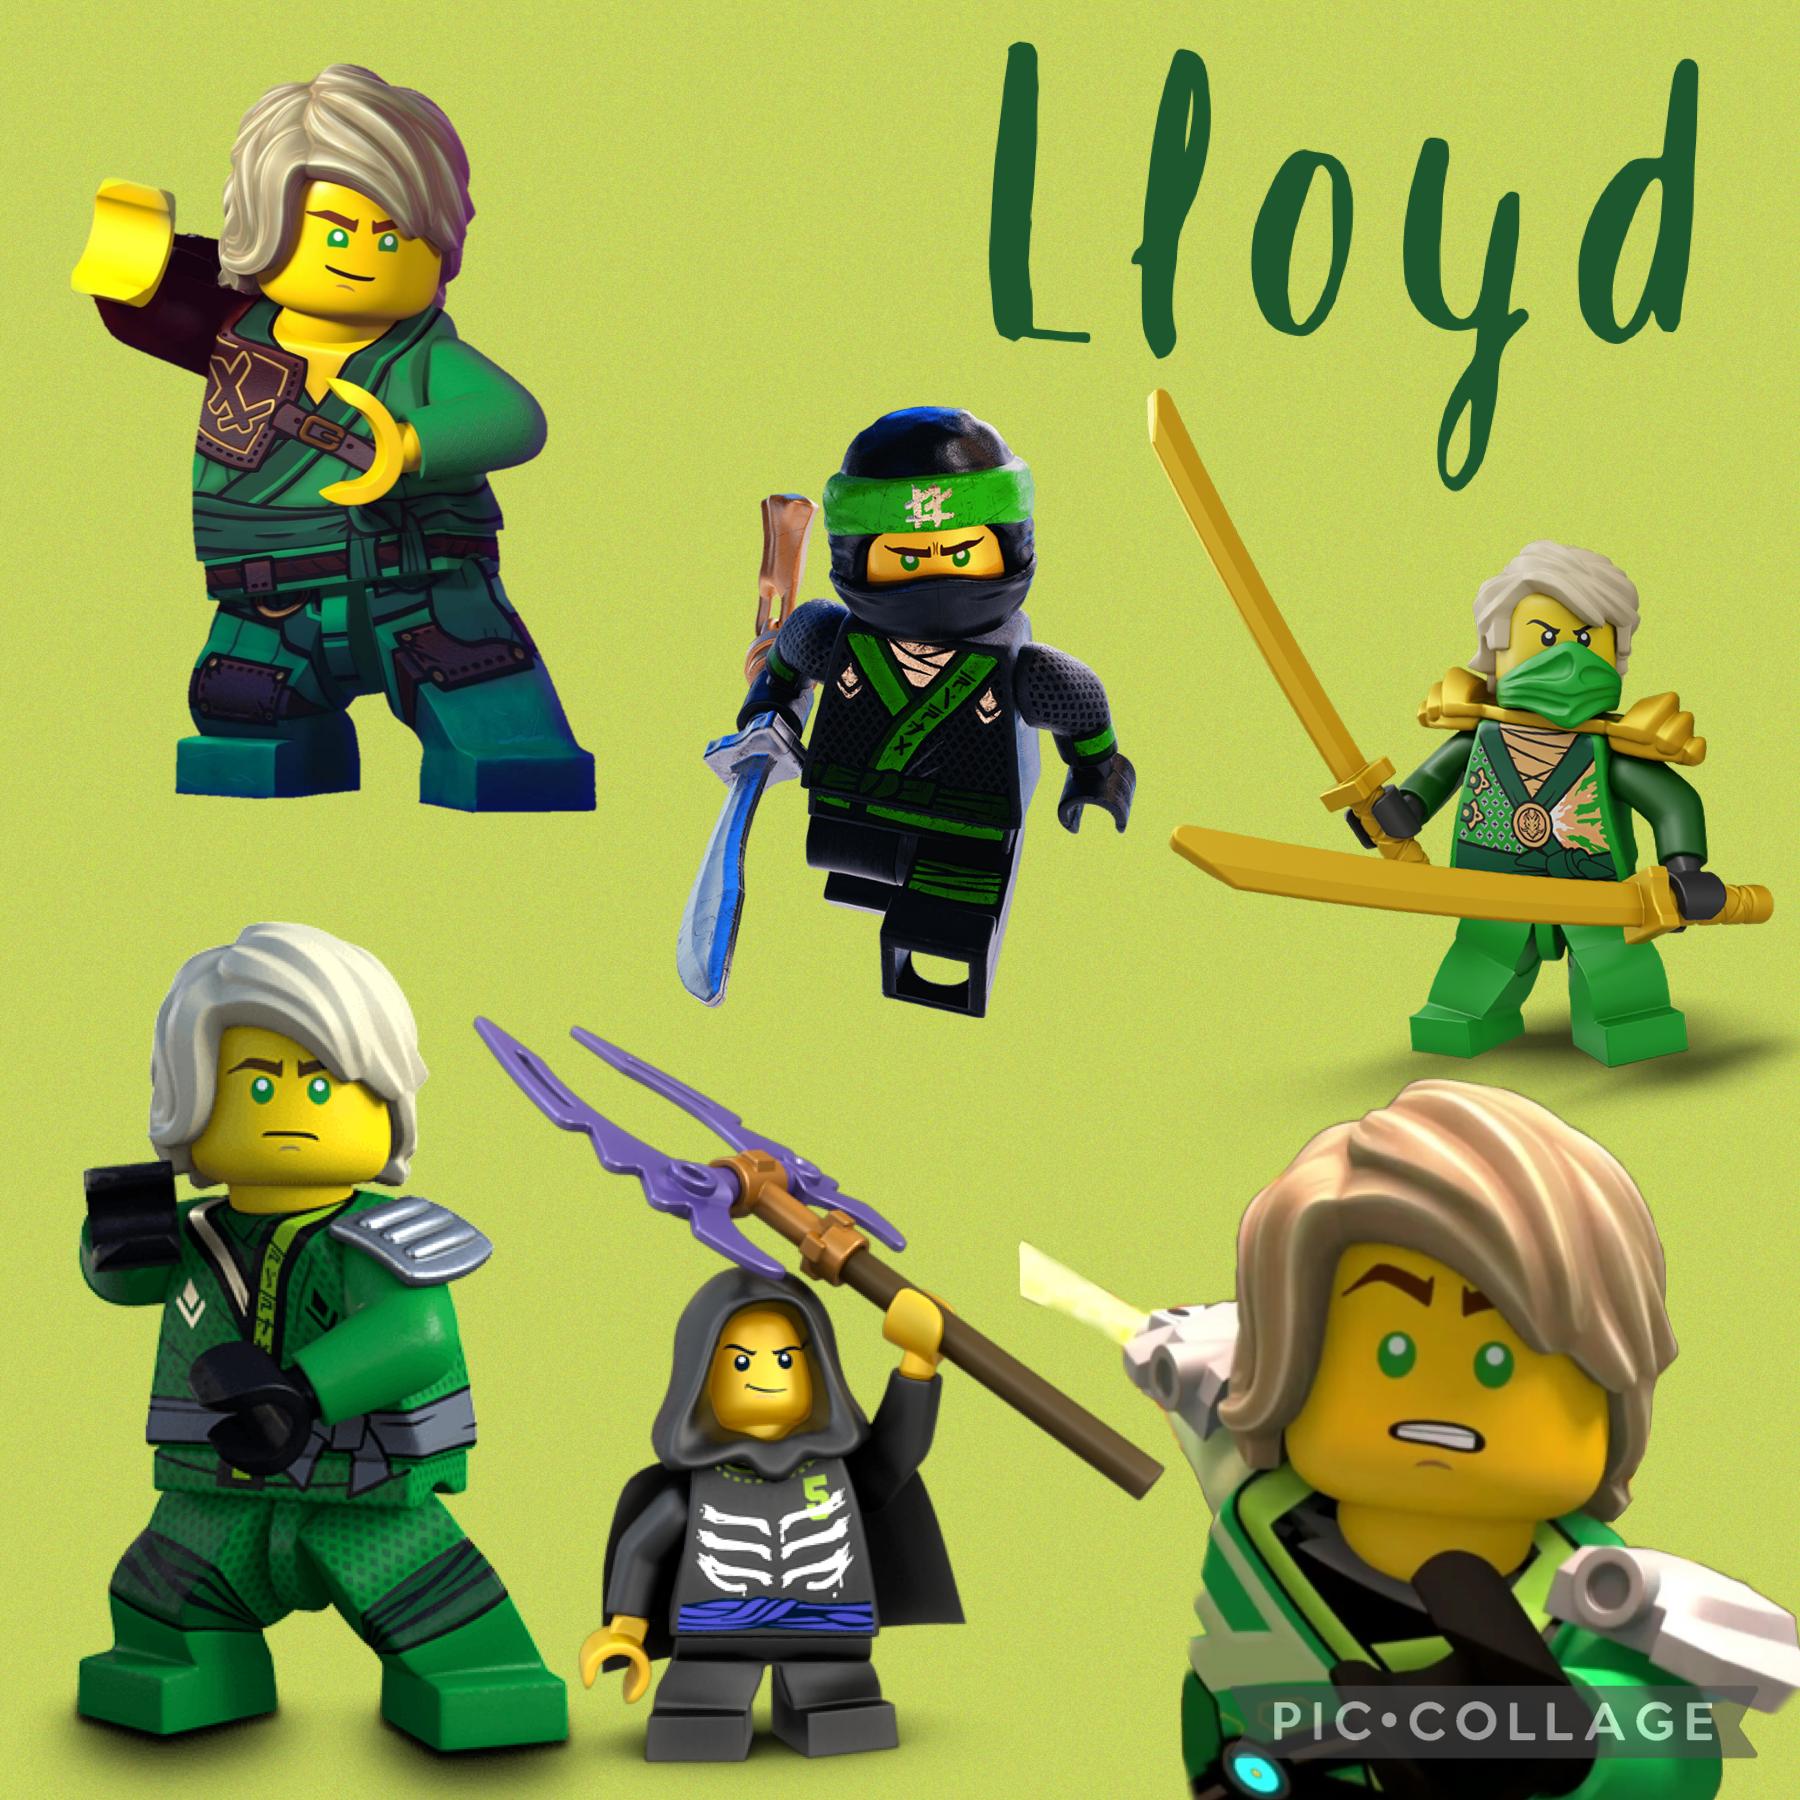 Lloyd collage